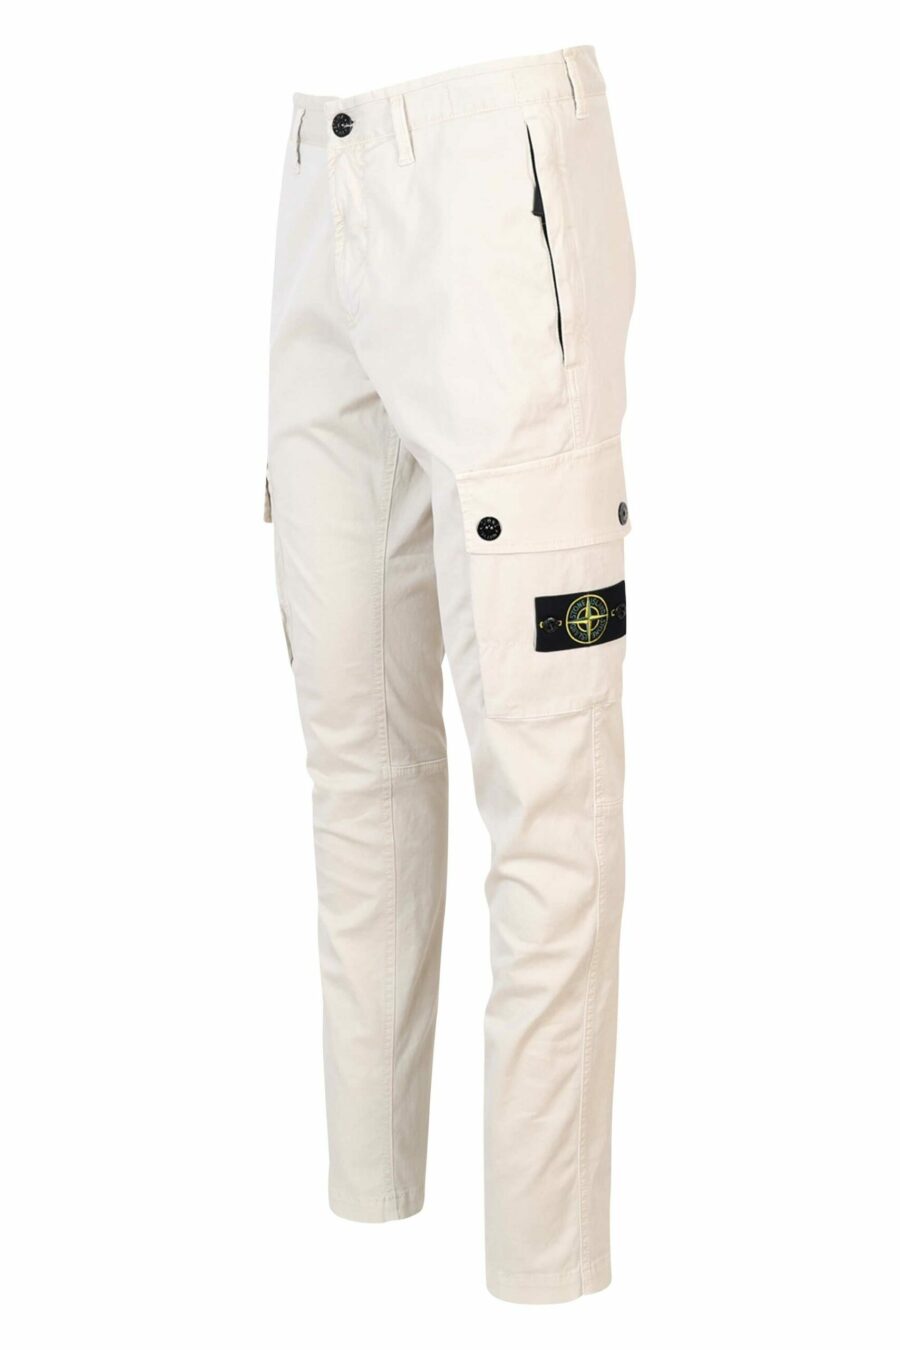 Pantalon slim beige avec patch logo sur le côté - 8052572752537 1 scaled